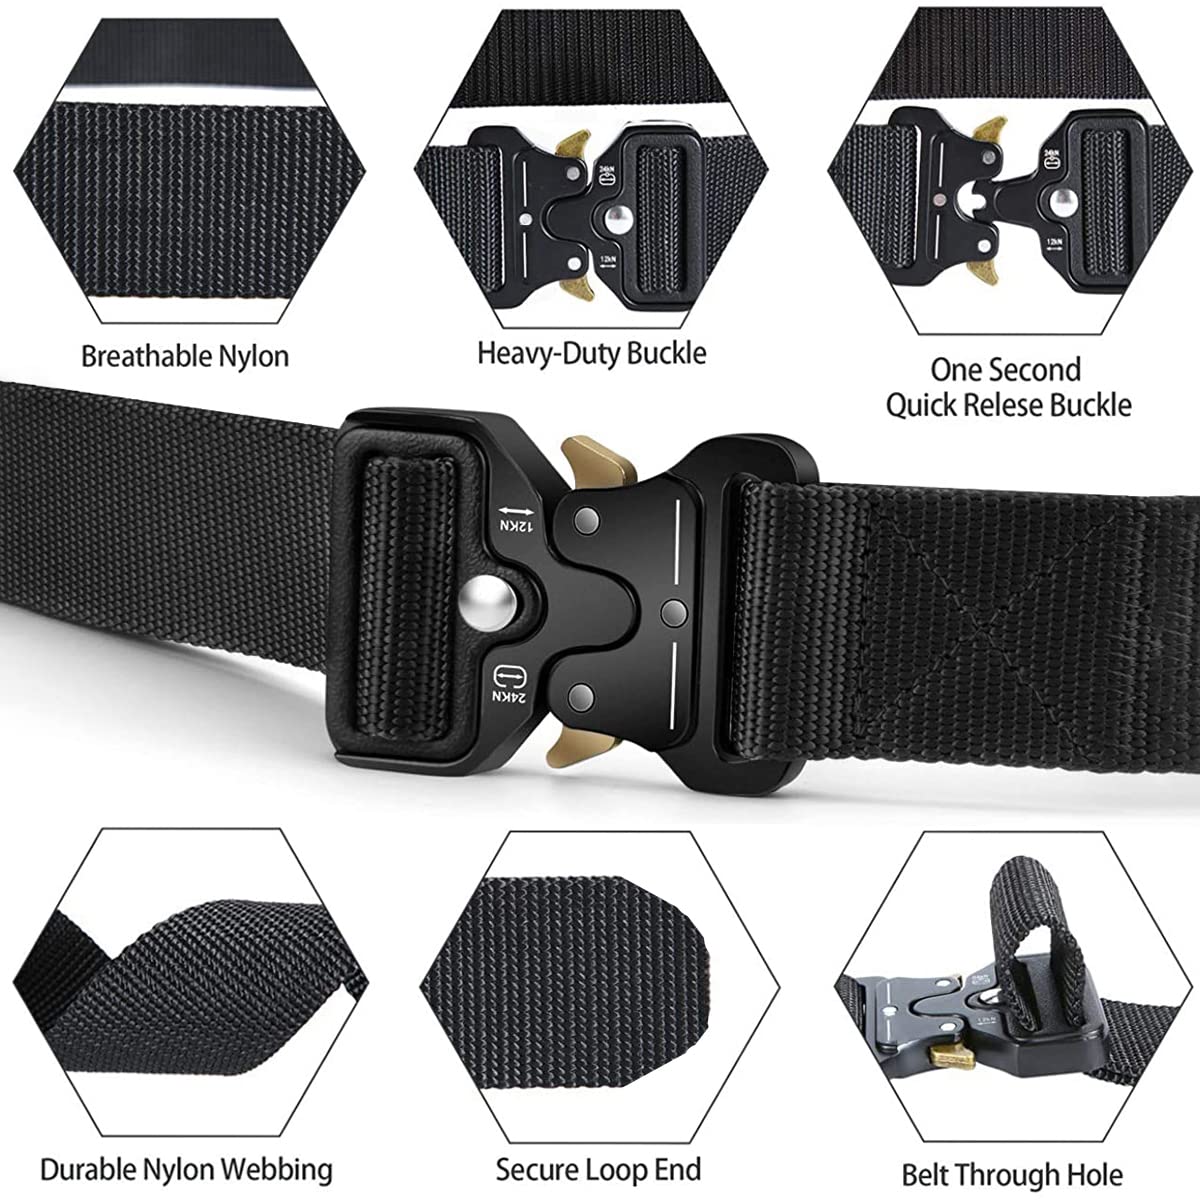 Taktische Gürtel für Männer im Militärstil, Arbeit, Wandern, Riggers Web Gun Belt mit strapazierfähiger Schnellverschluss-Metallschnalle